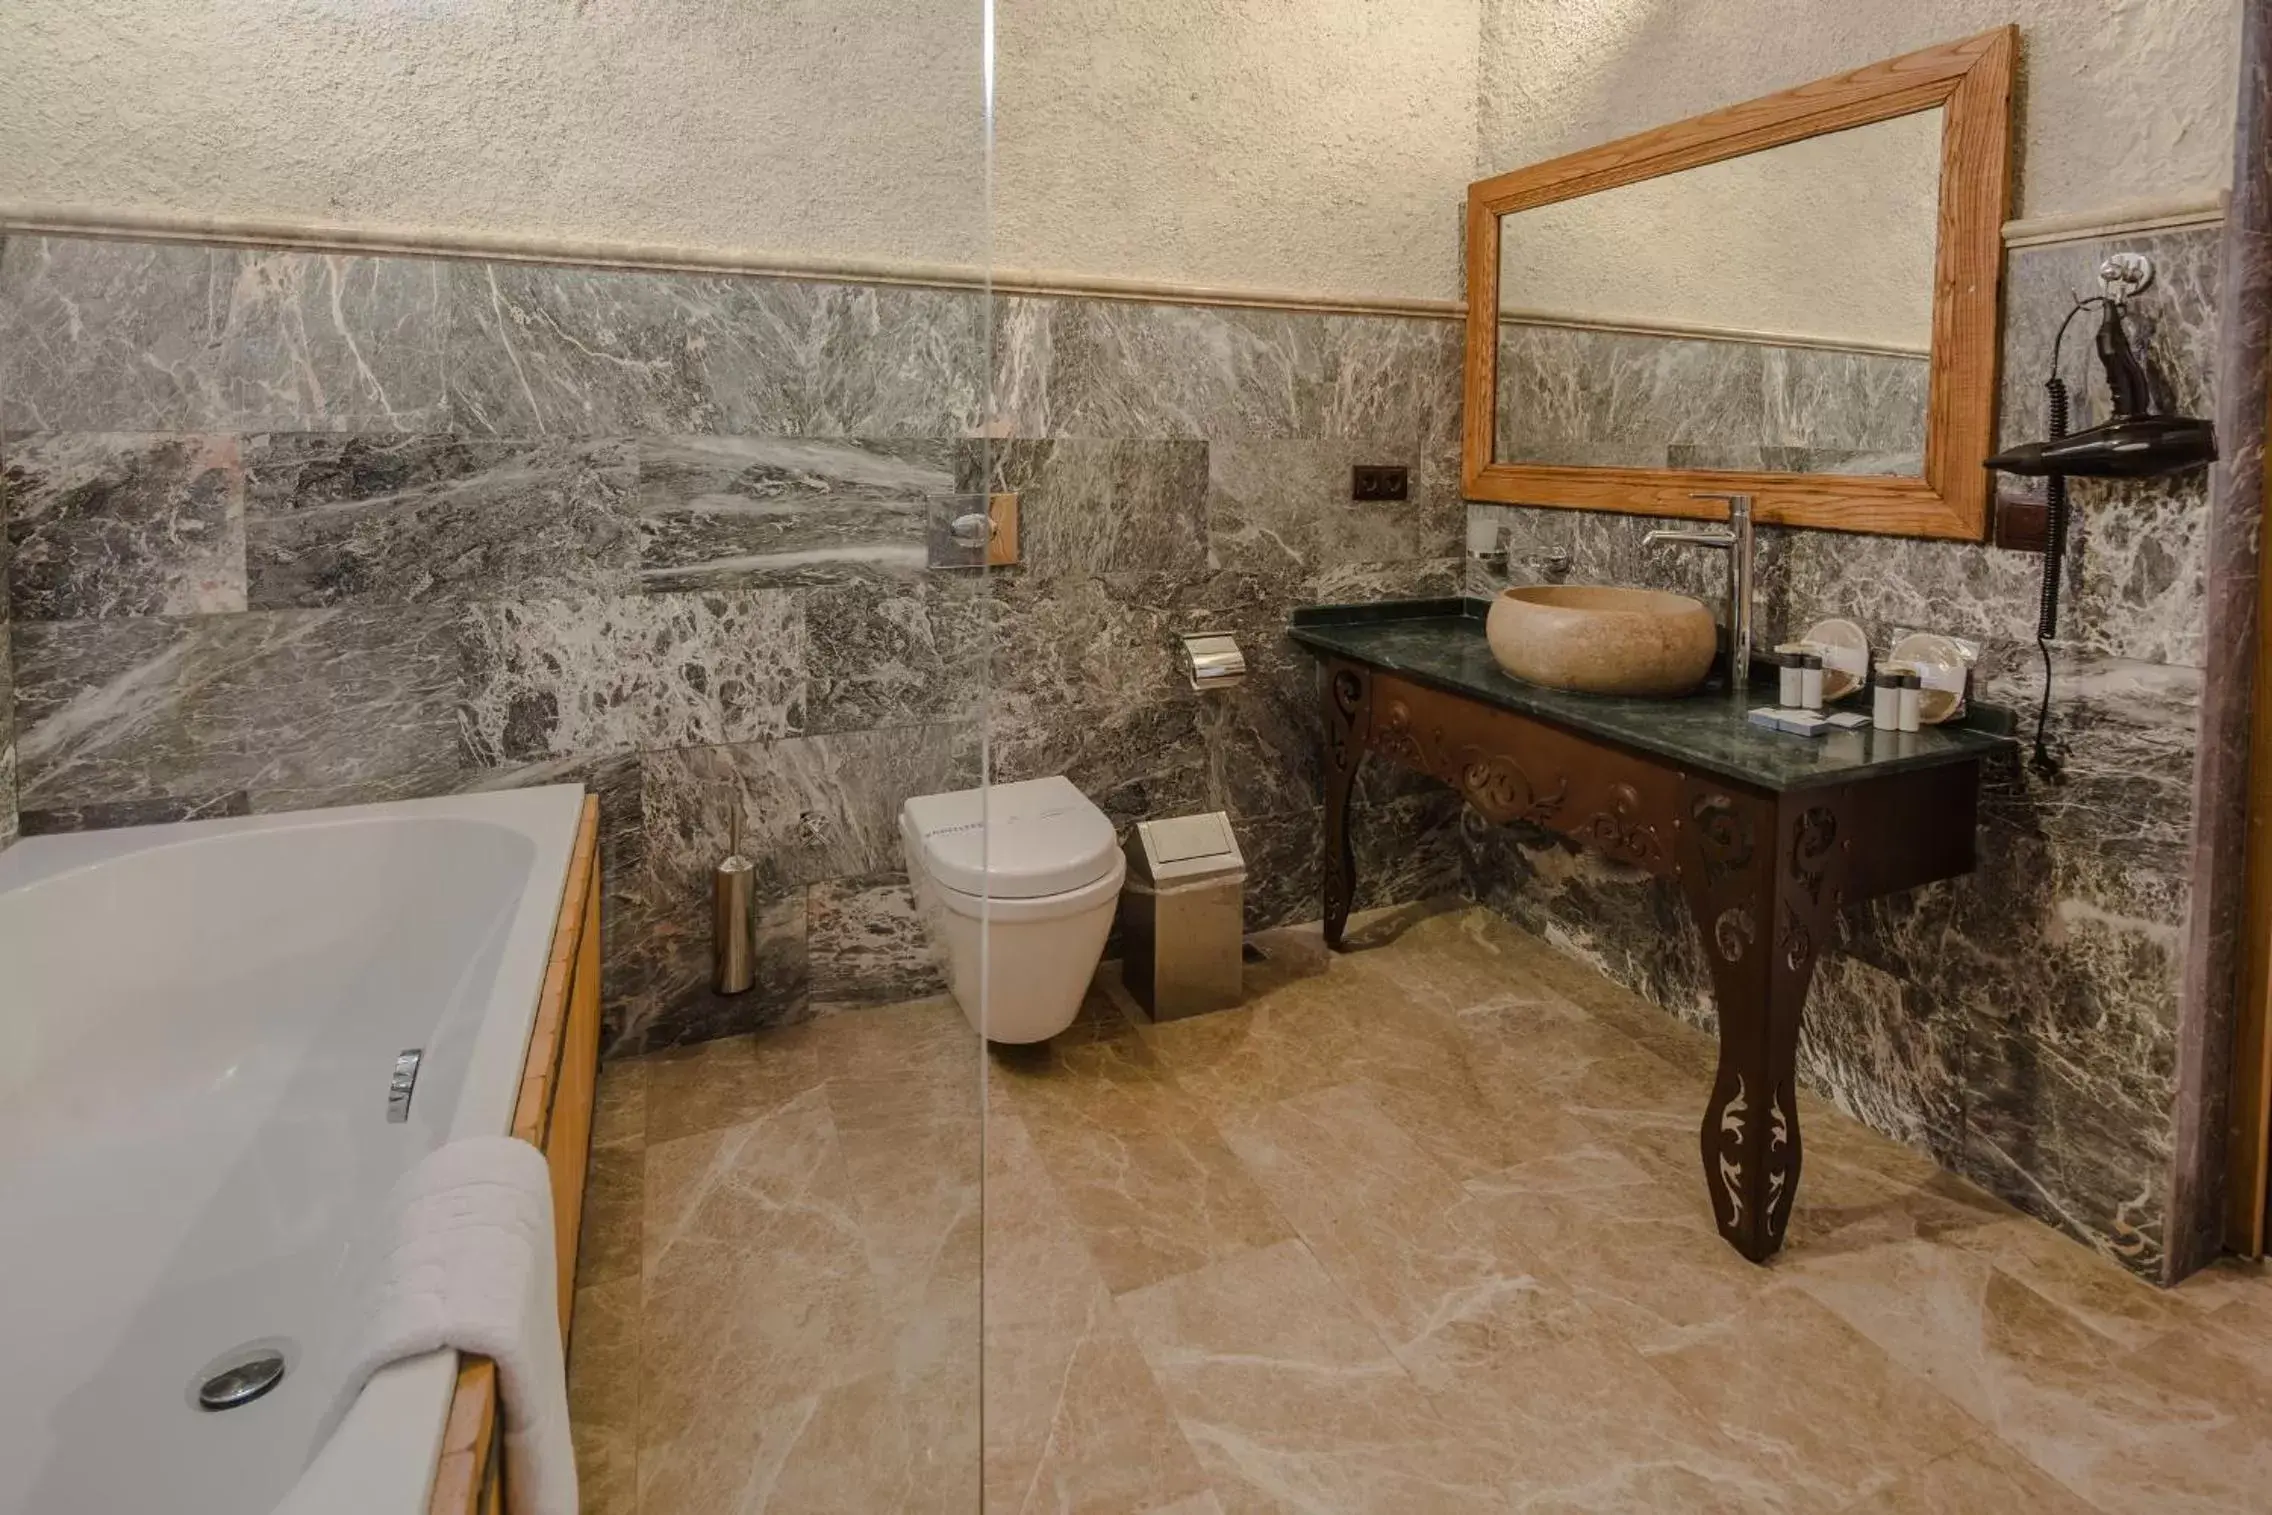 Toilet, Bathroom in Lunar Cappadocia Hotel